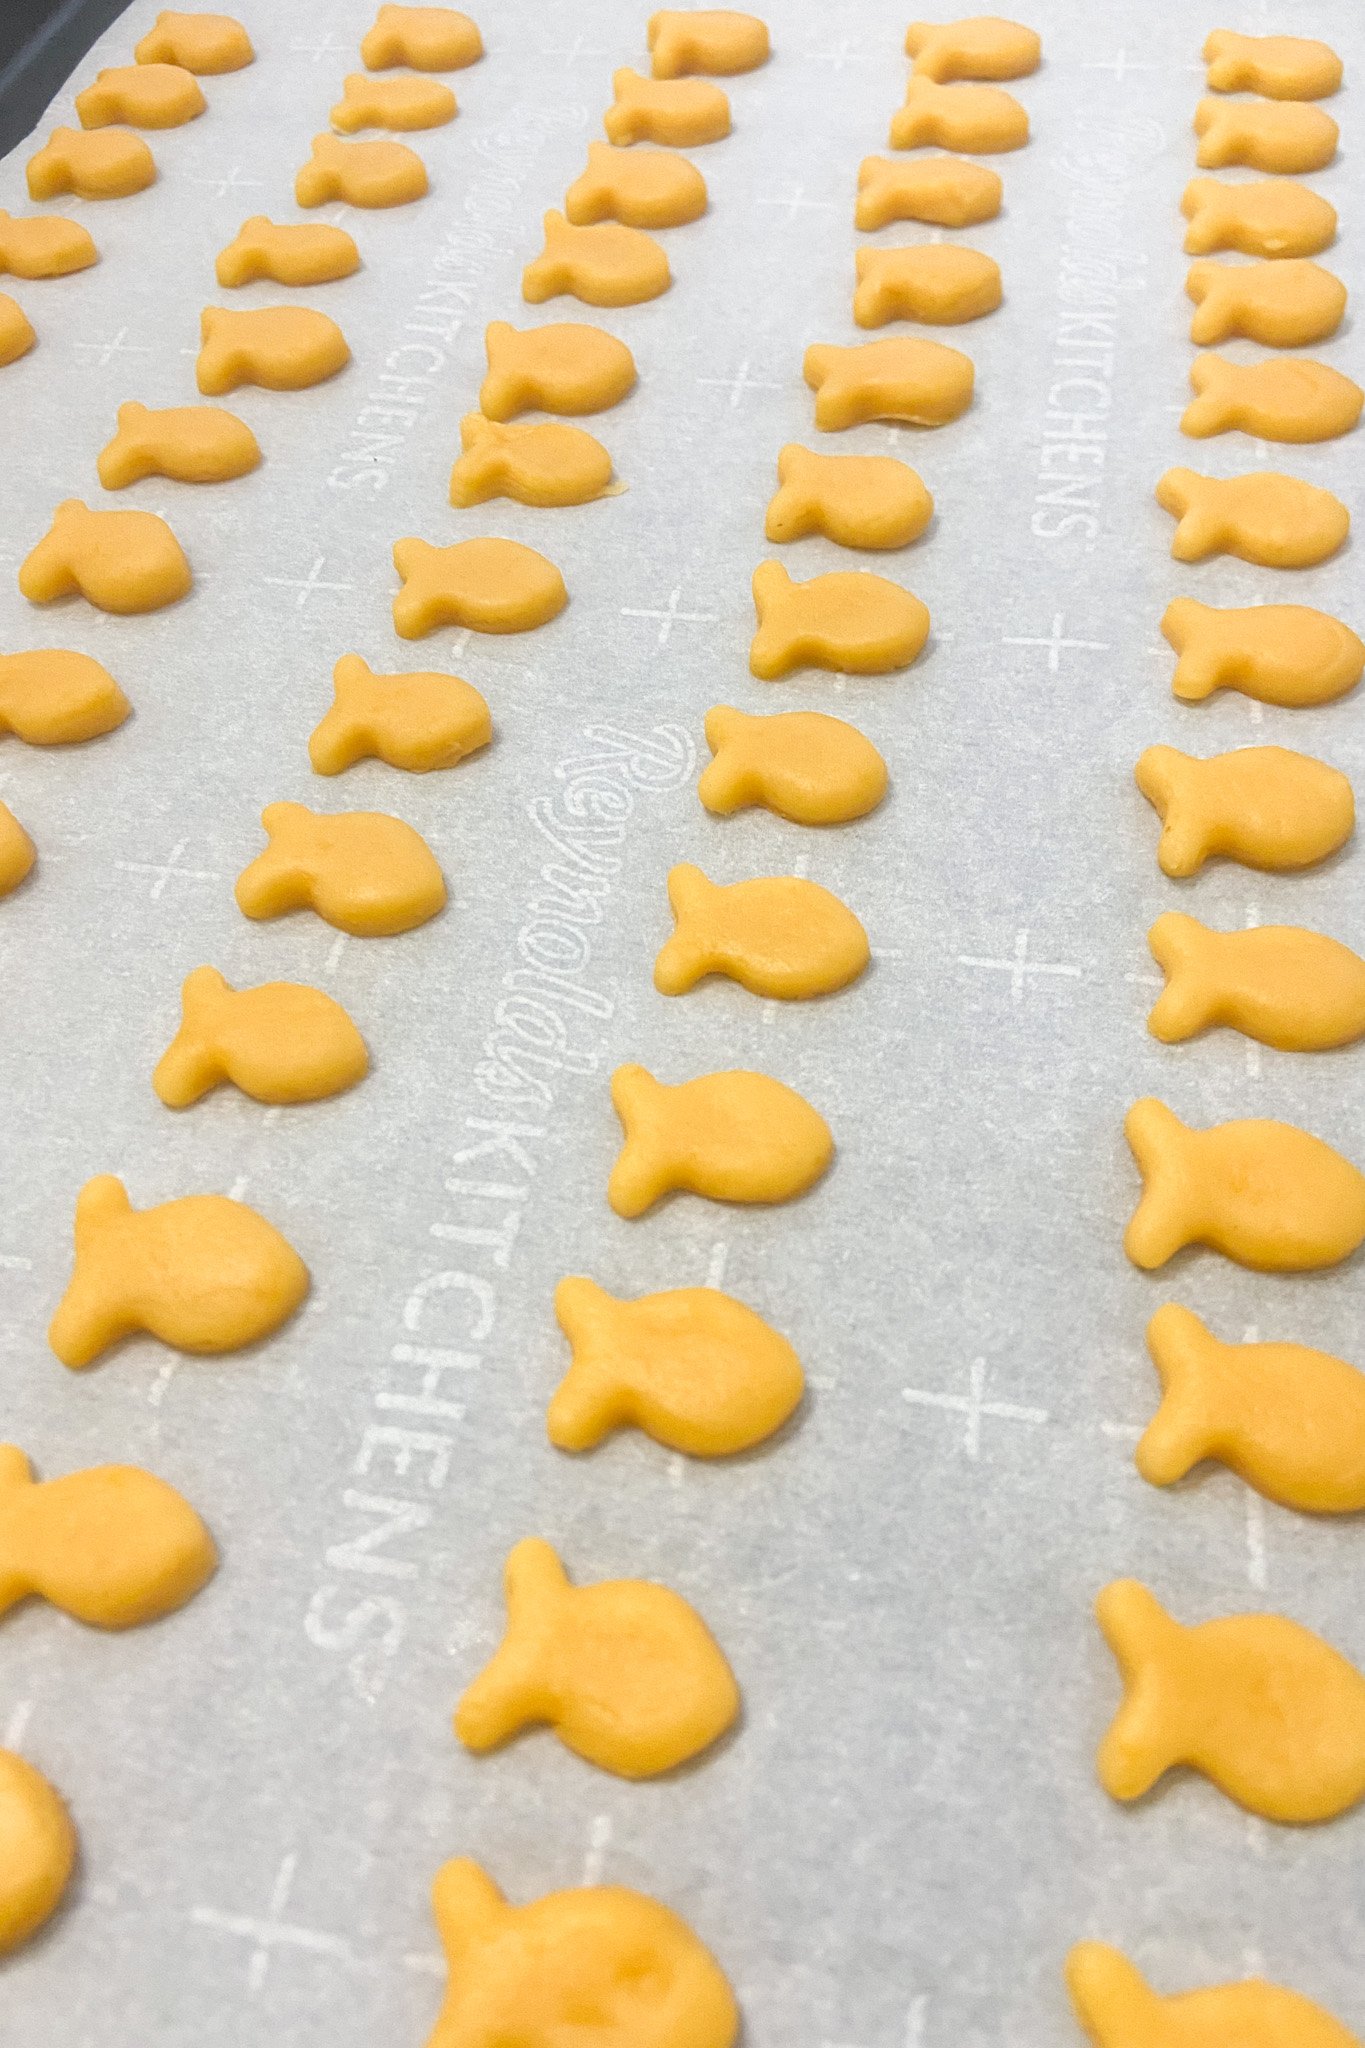 Goldfish crackers ready to bake